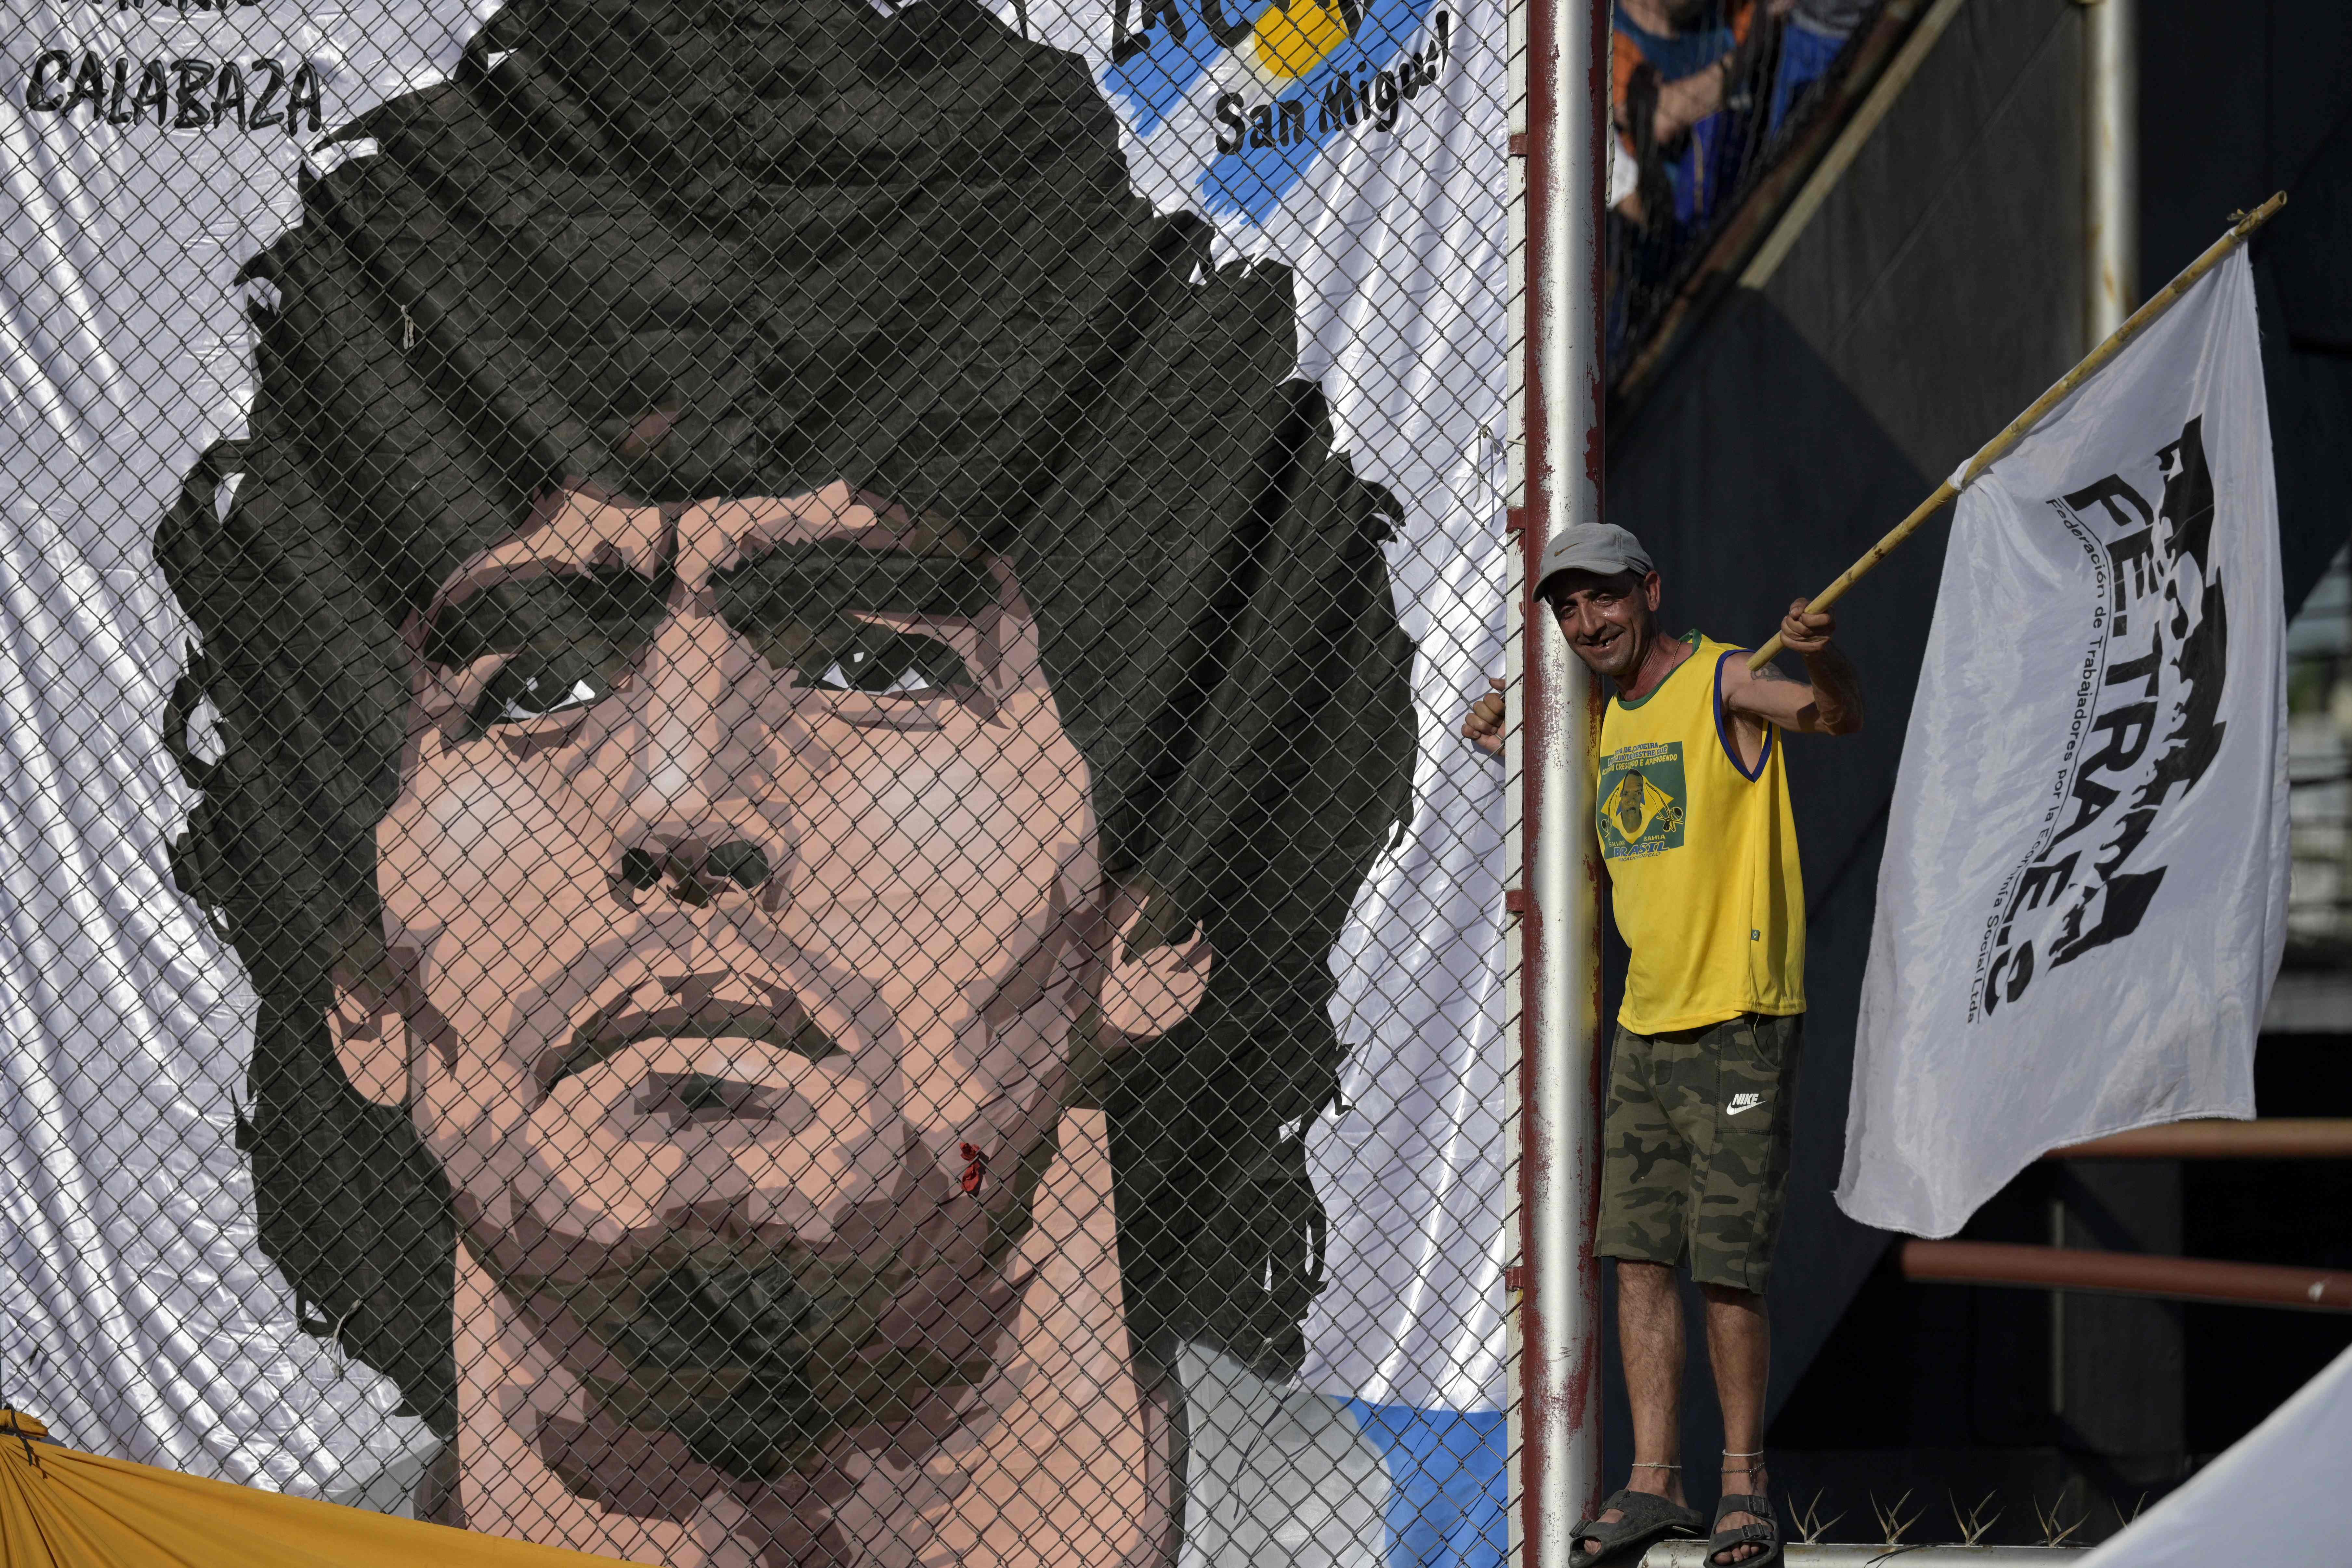 Diego Maradona falleció el 25 de noviembre del 2020 y hay siete personas imputas por su posible homicidio. (Foto Prensa Libre: AFP)